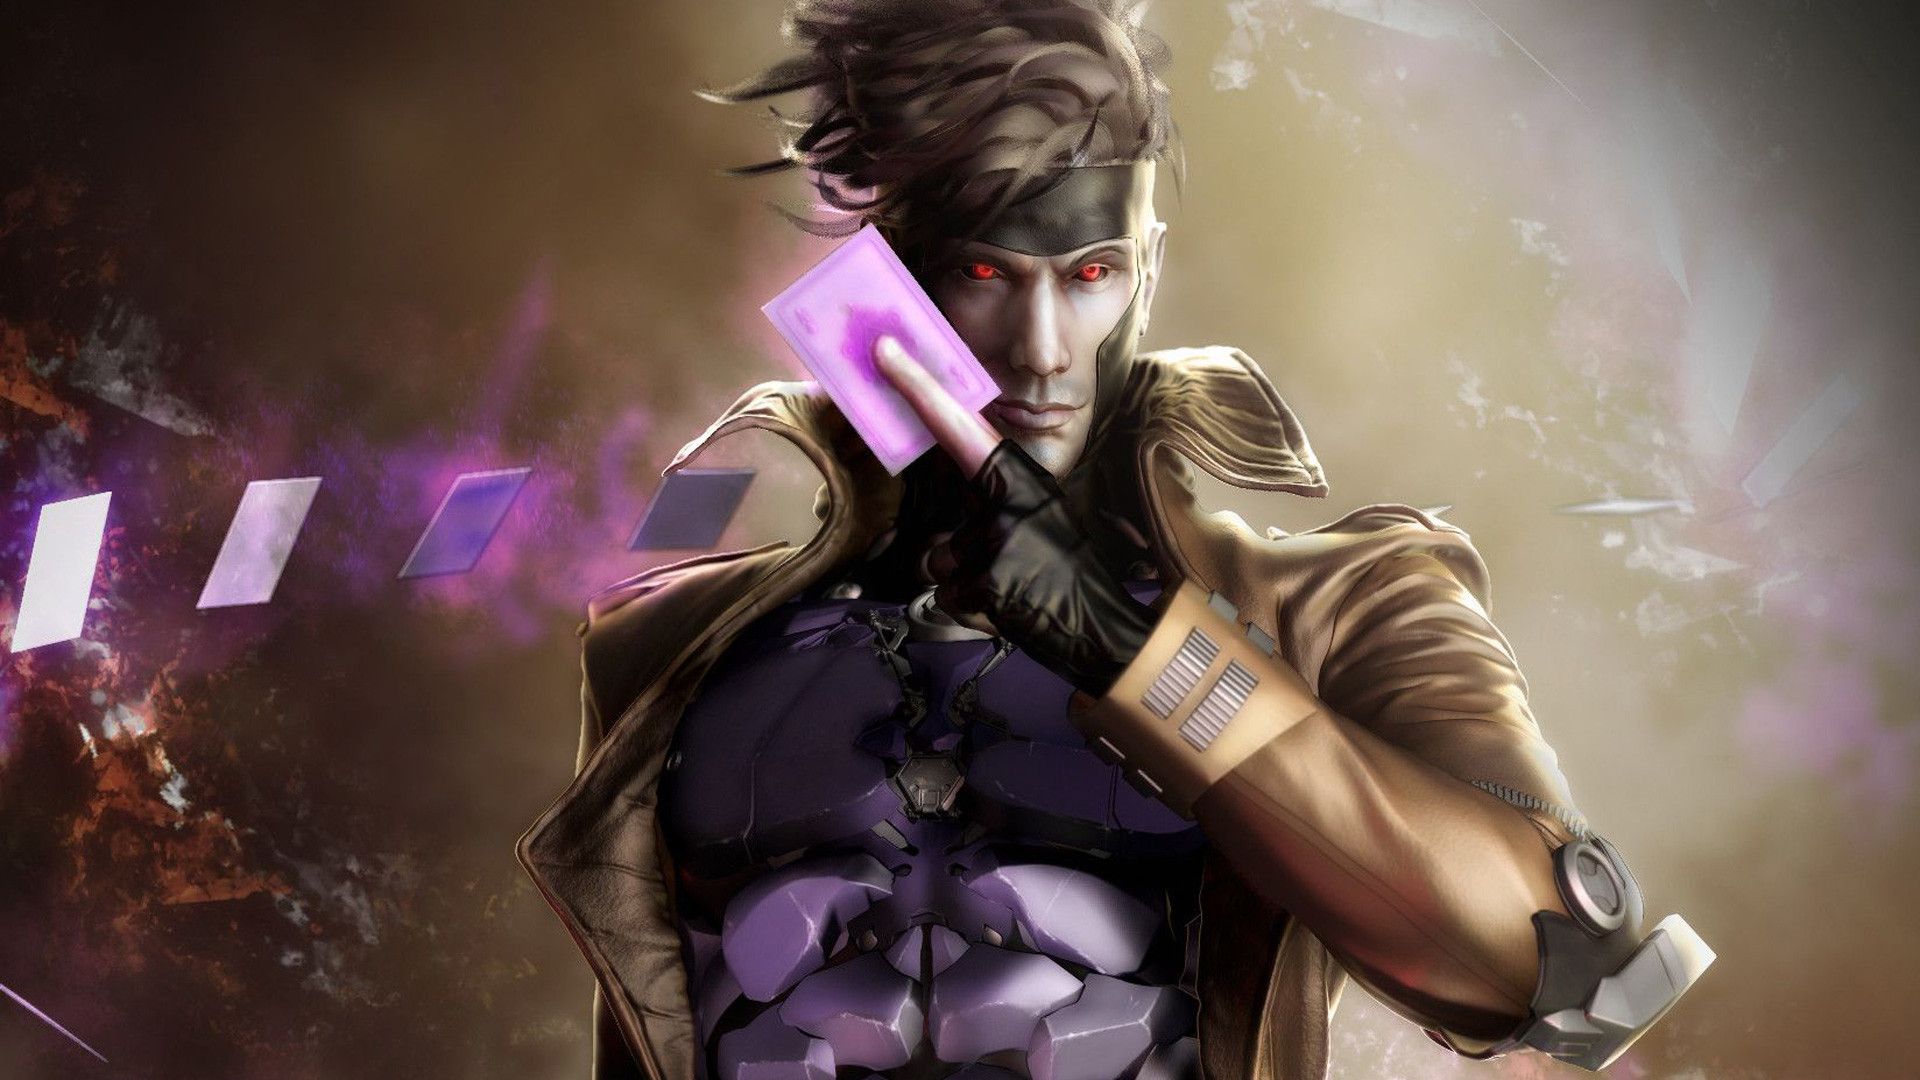 Conheça tudo sobre Remy Leblear, o Gambit dos X-Men, seus Poderes e Habilidades e a origem desse forte personagem da Marvel